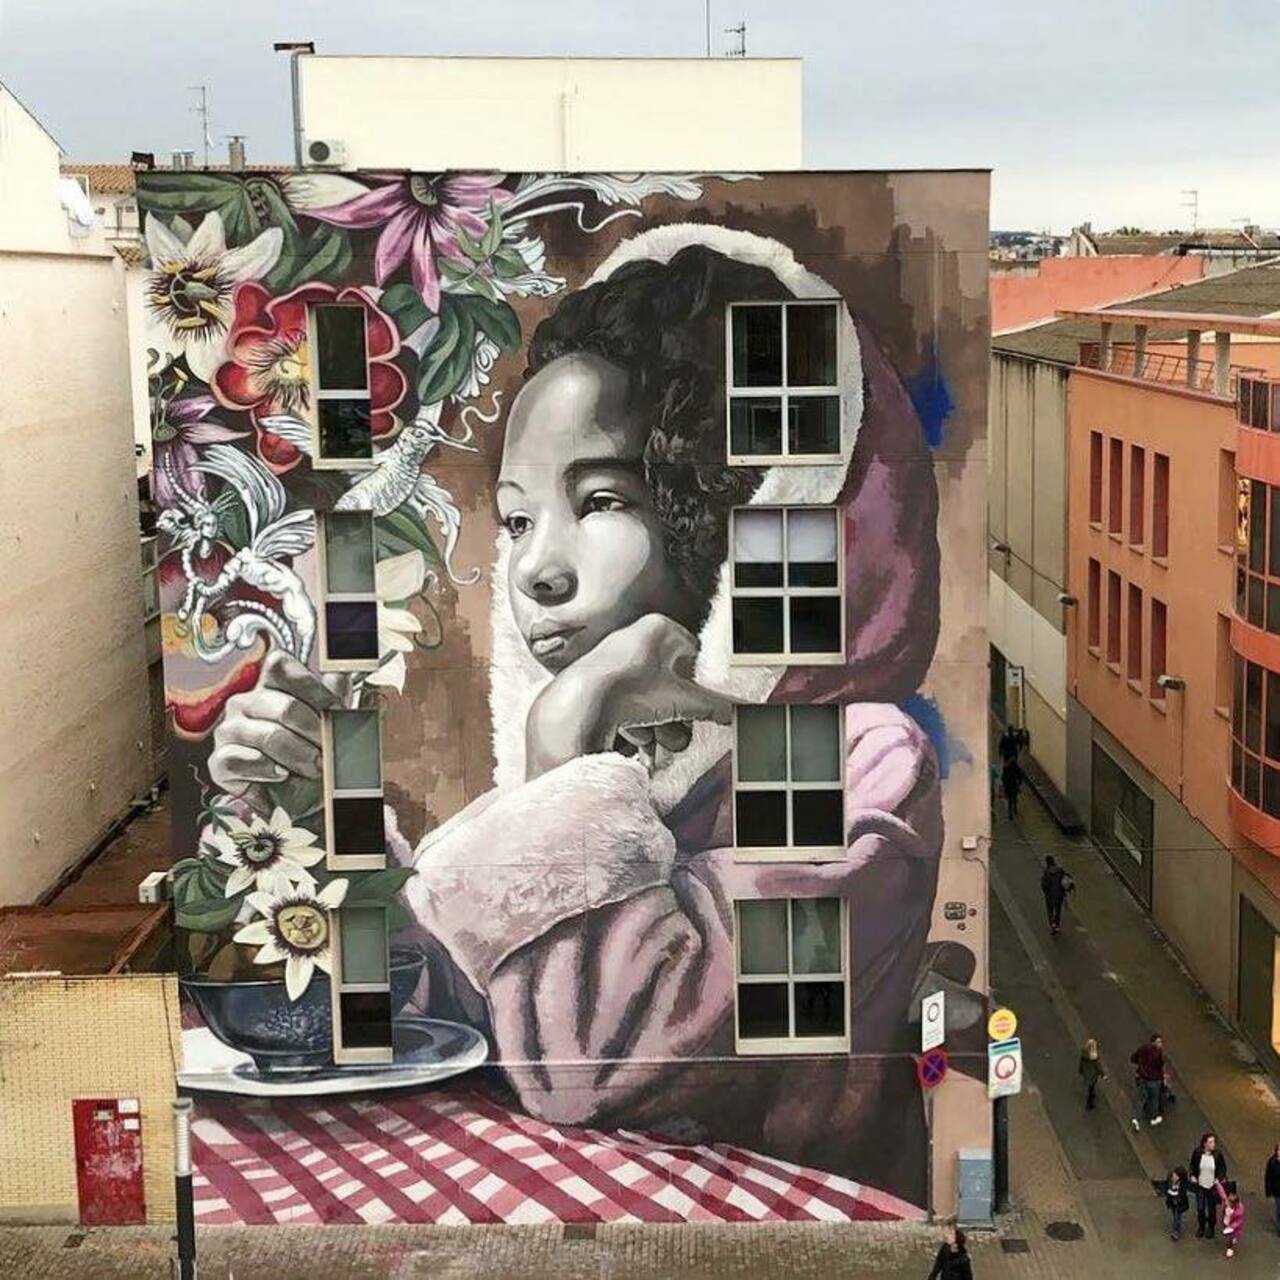 ... like beauty... and flowers. Amazing piece by Lula Goce in Barcelona #StreetArt #Art #Beauty #Flowers #Innocence #Graffiti #Mural #Barcelona https://t.co/mqfCWmX8iJ